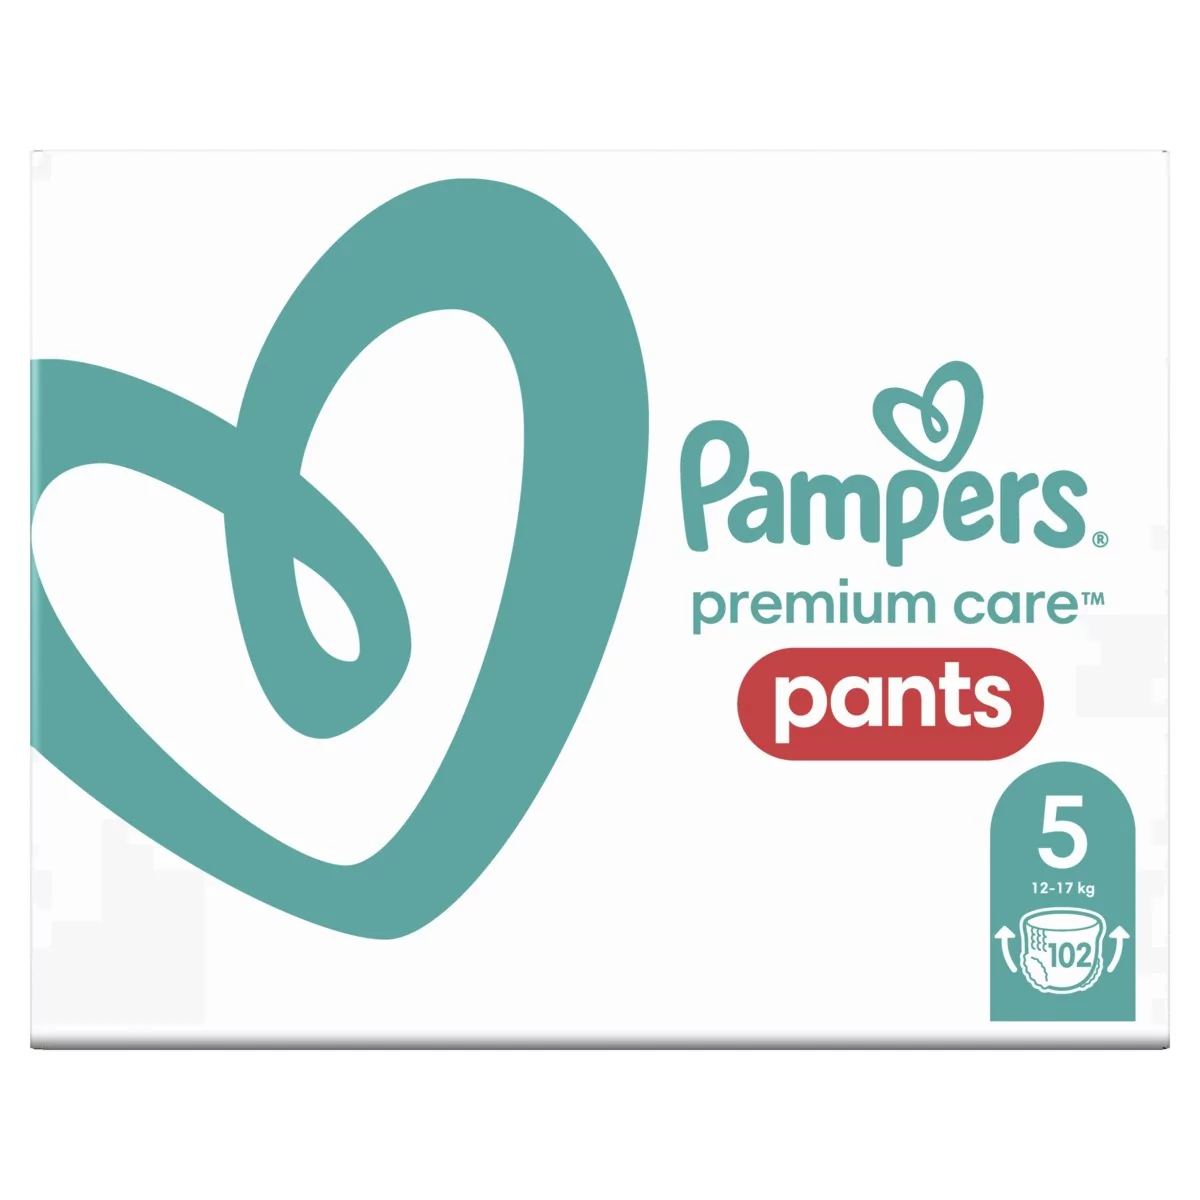 Pampers Premium Care Pieluchomajtki rozmiar 5 102 sztuki) #Wpisz kod 22MDL4PL25 i obniż cenę o dodatkowe 15% Kody ważne do 17.04.2022